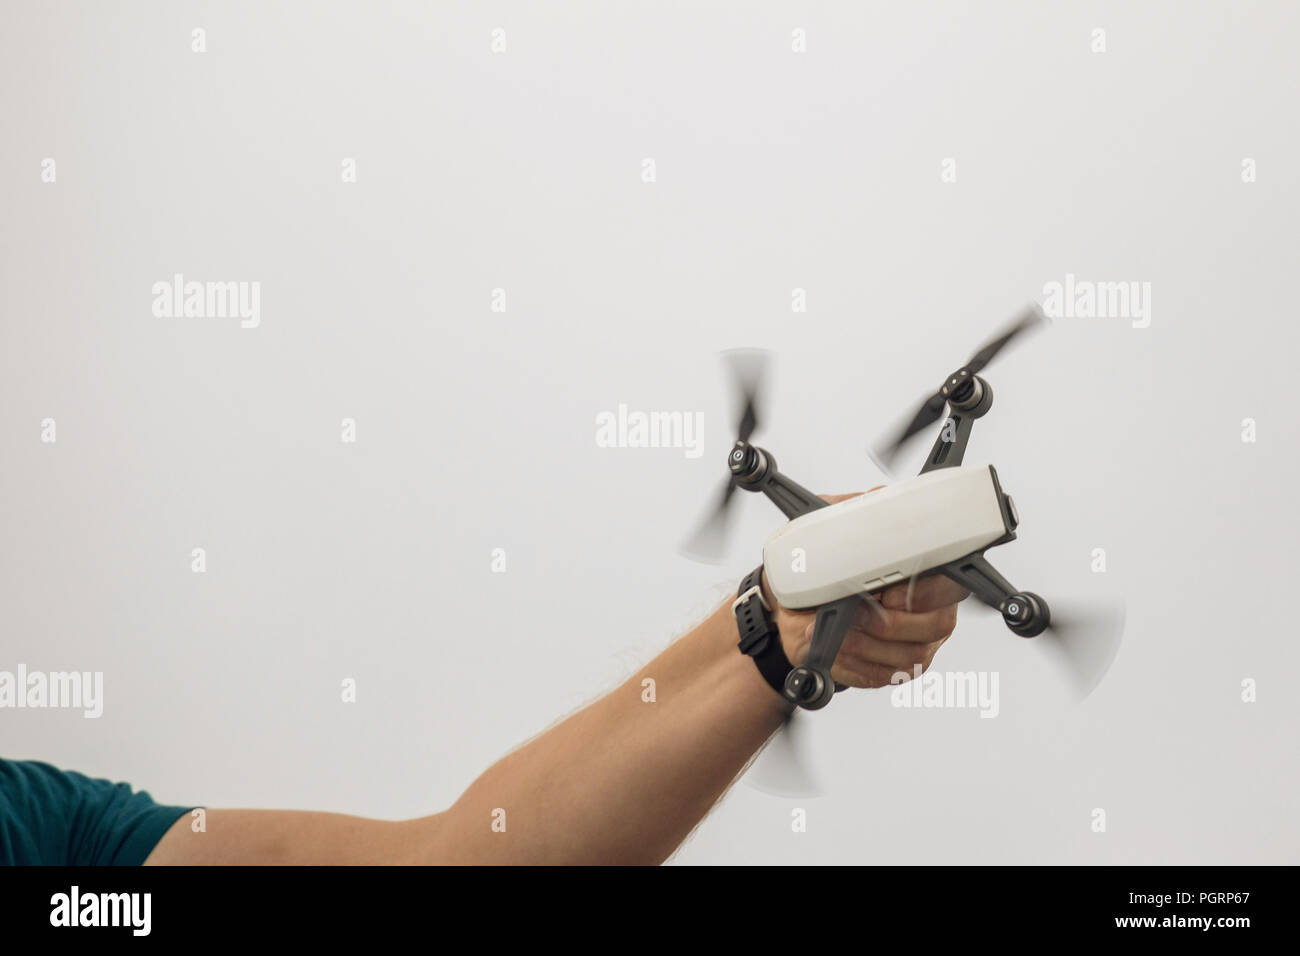 Le petit dron attire l'homme dans sa main. L'atterrissage Dron Banque D'Images